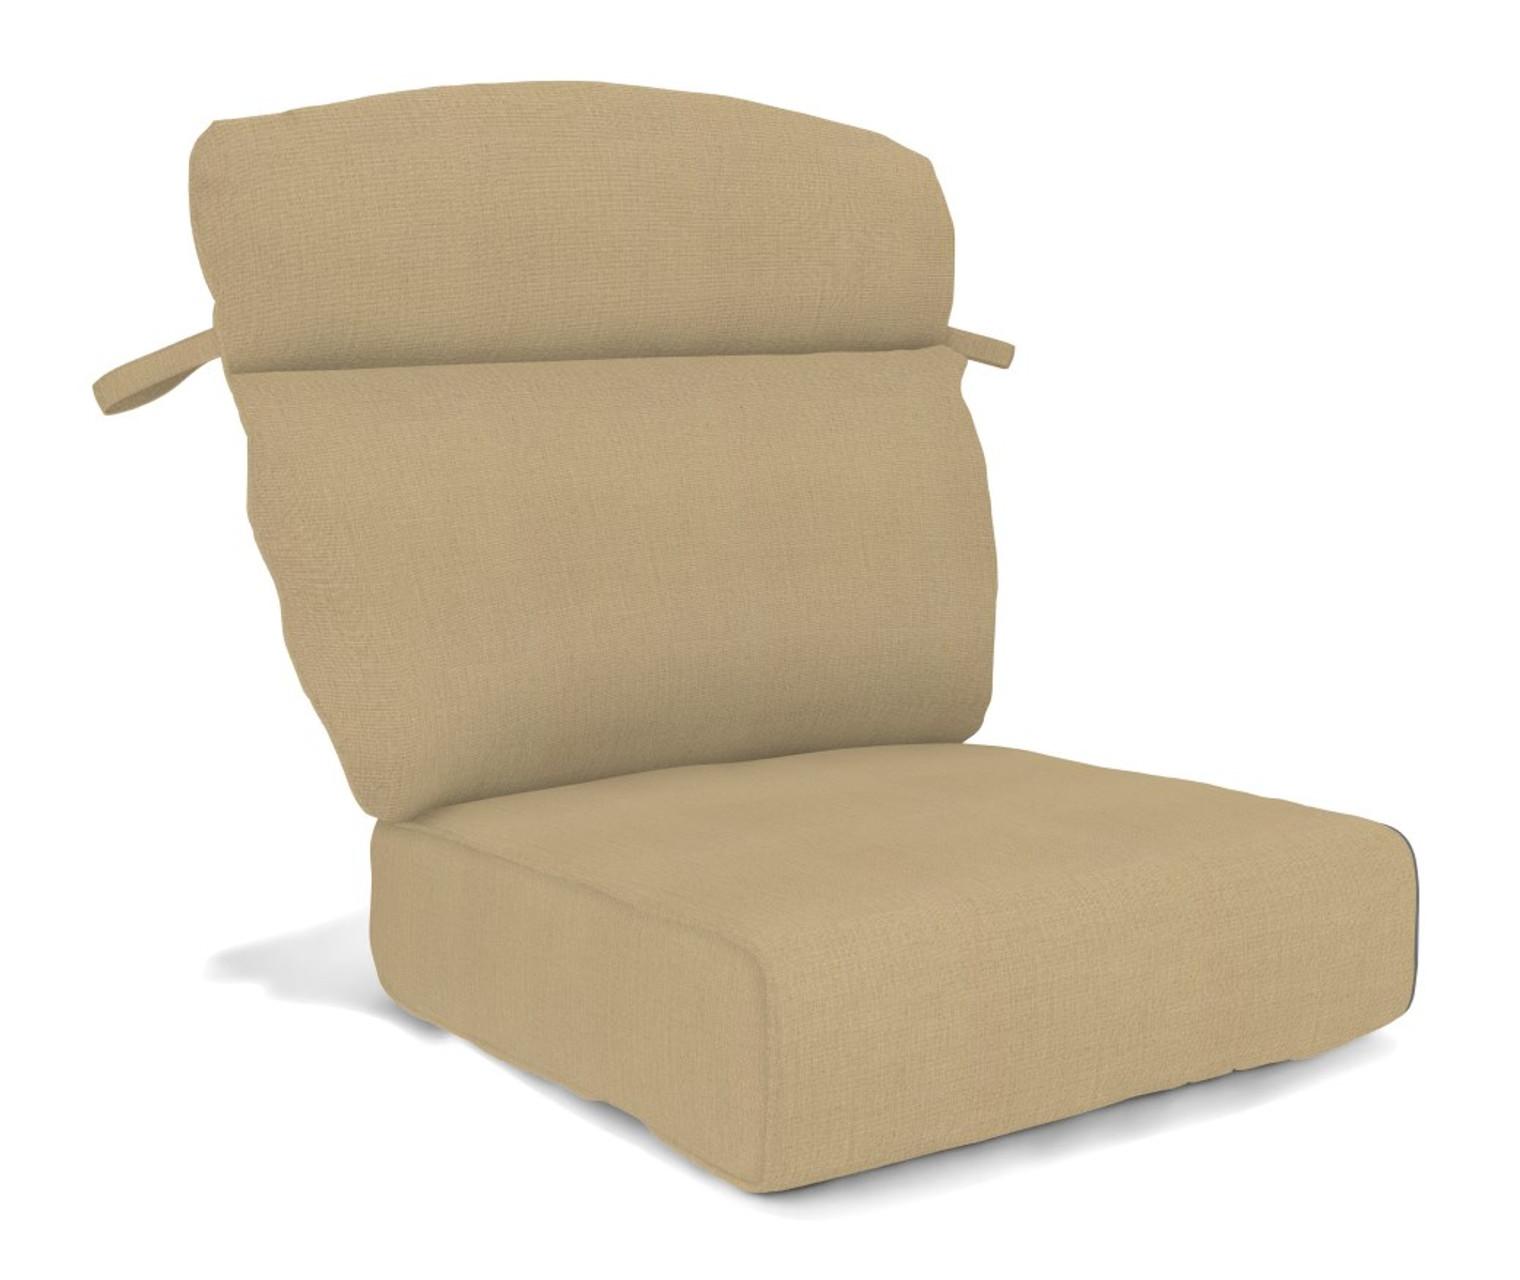 Erwin Morris Chair Cushions 6545